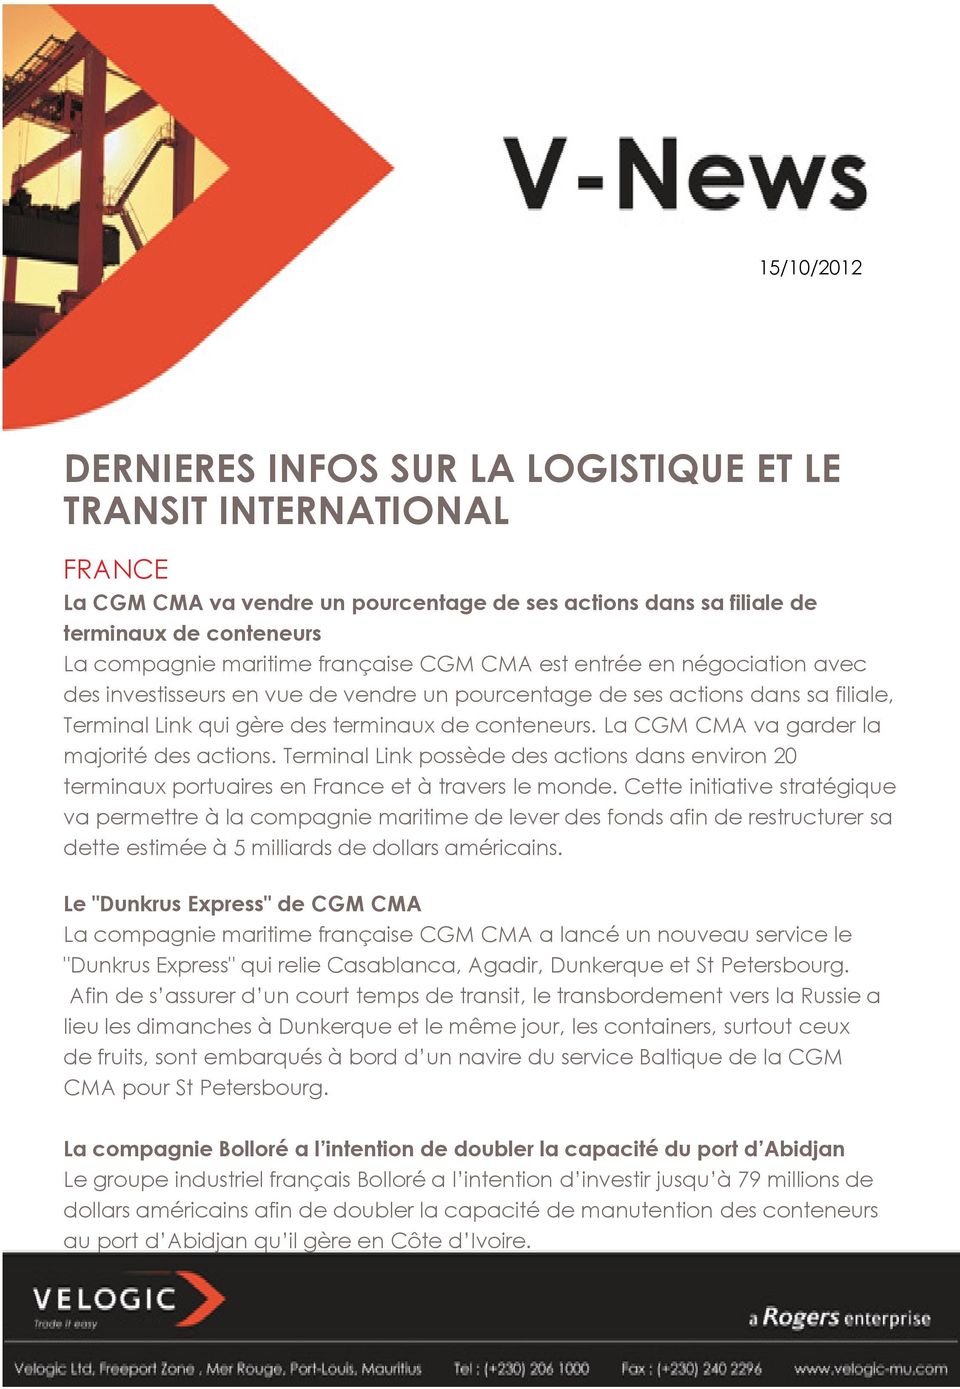 La CGM CMA va garder la majorité des actions. Terminal Link possède des actions dans environ 20 terminaux portuaires en France et à travers le monde.